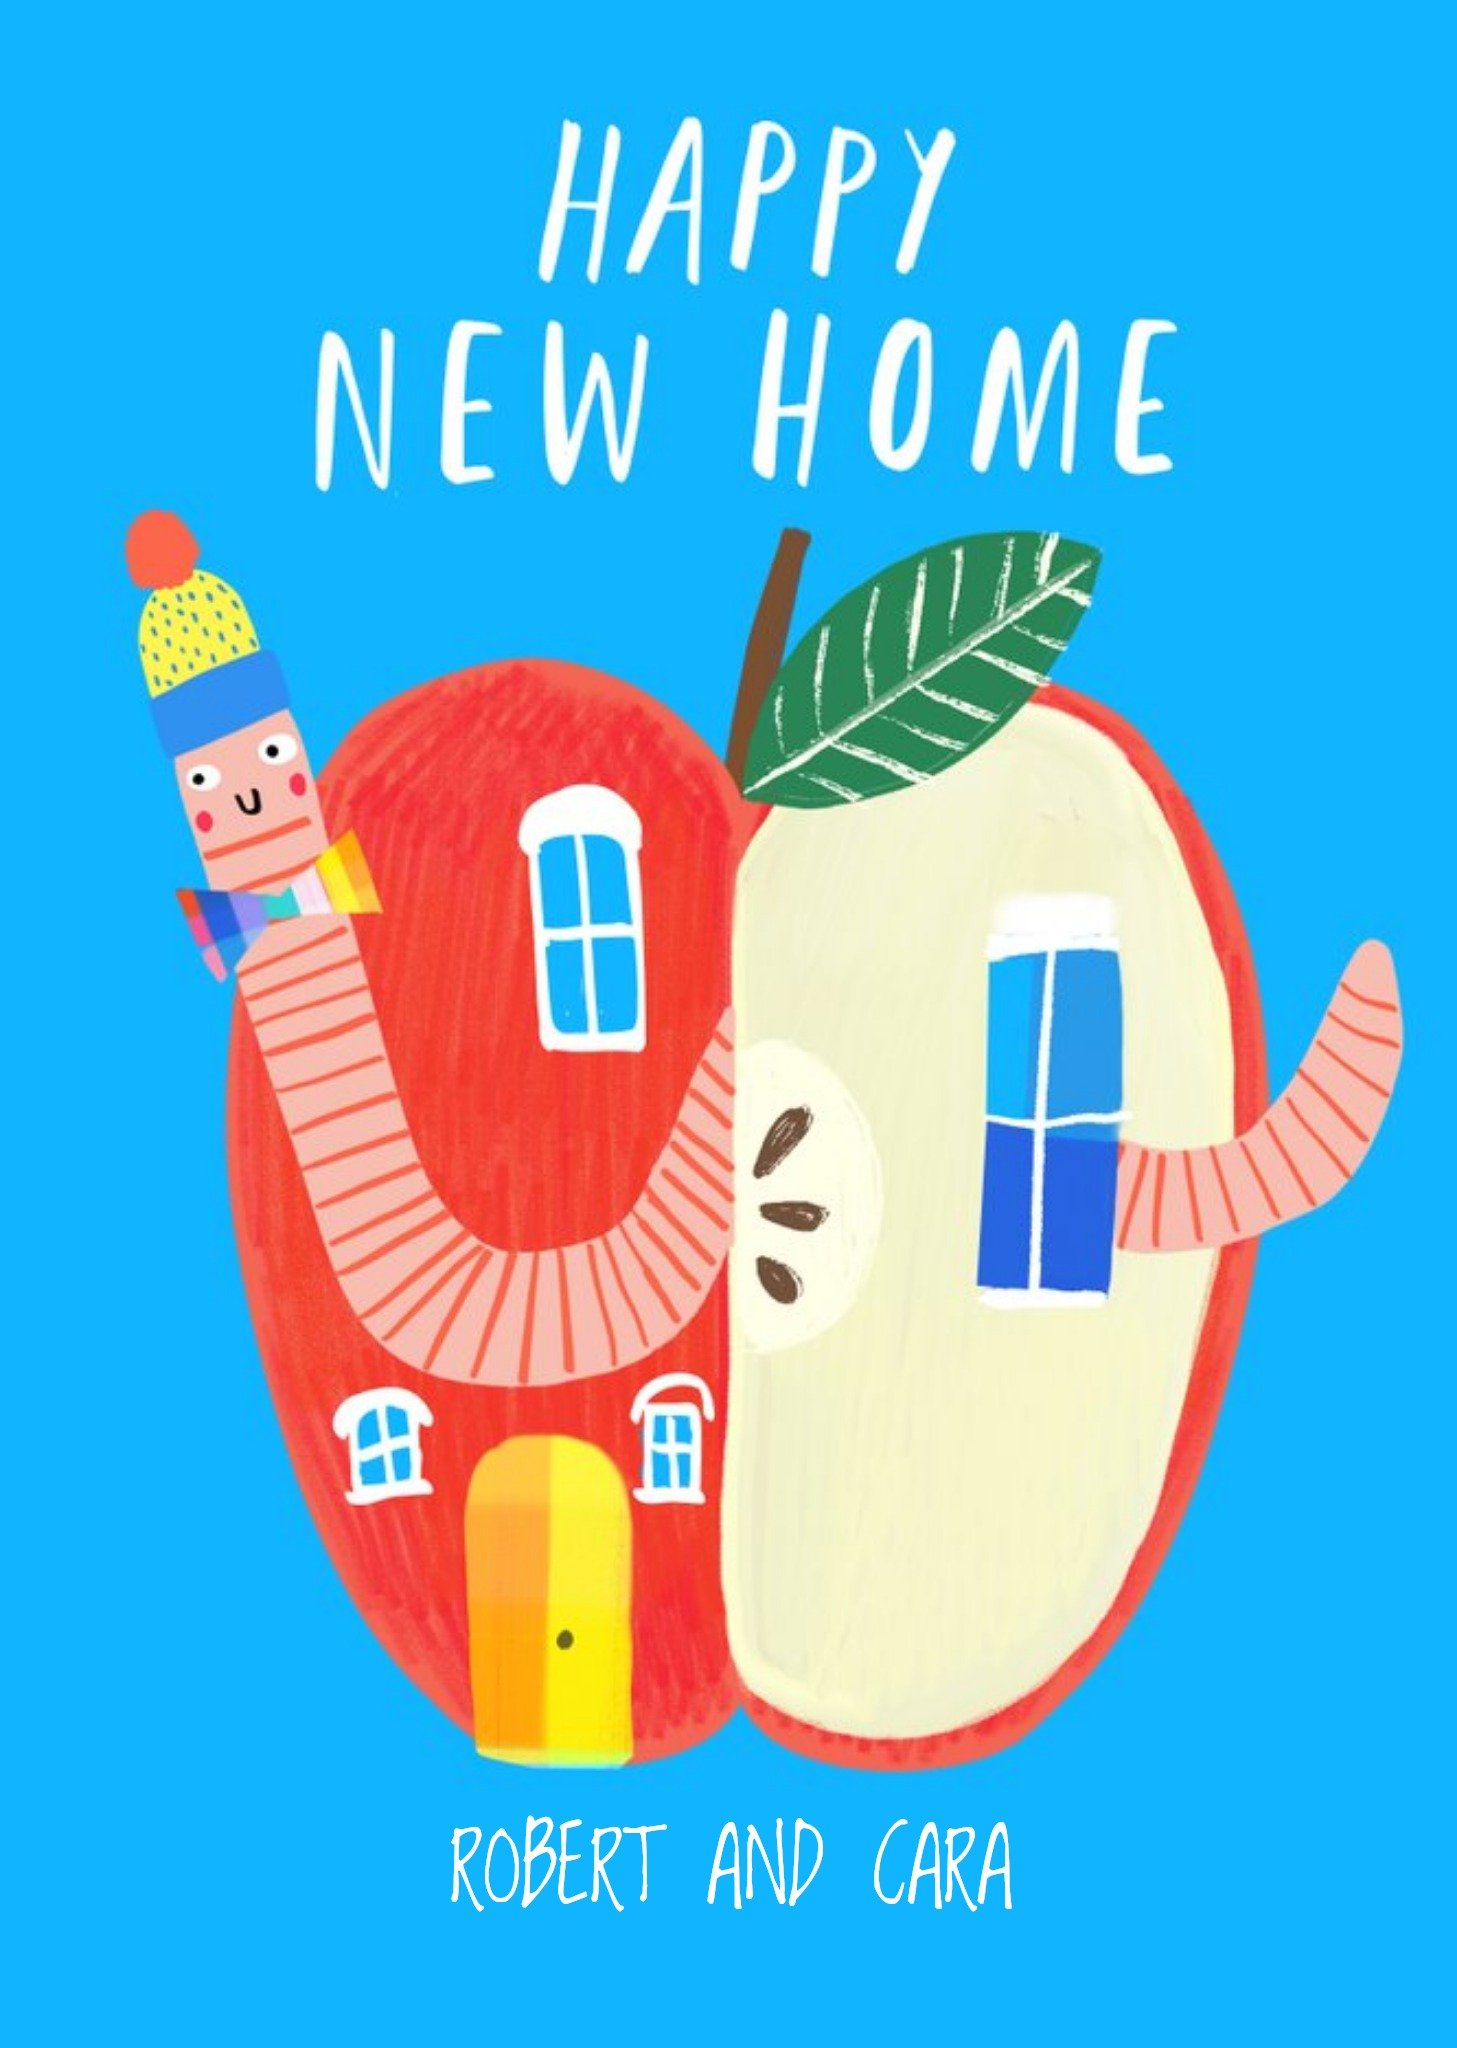 Moonpig Katt Jones Illustration Worm Apple New Home Cute Card, Large